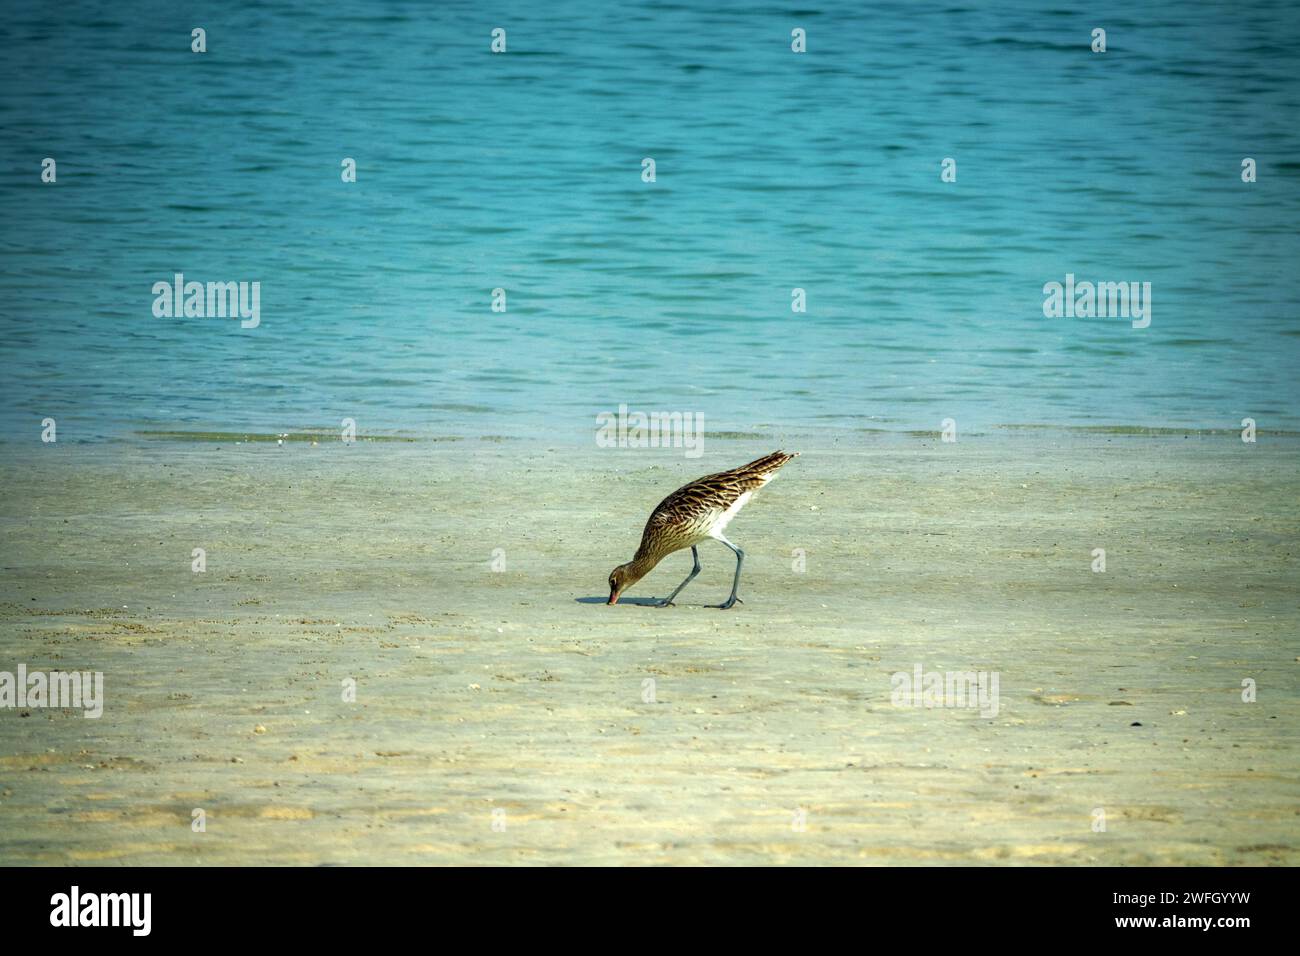 An der Küste des Persischen Golfs speist sich ein überwinterender europäischer Brach (Numenius arquata), der seinen langen geschwungenen Schnabel tief in den Sand steckt Stockfoto